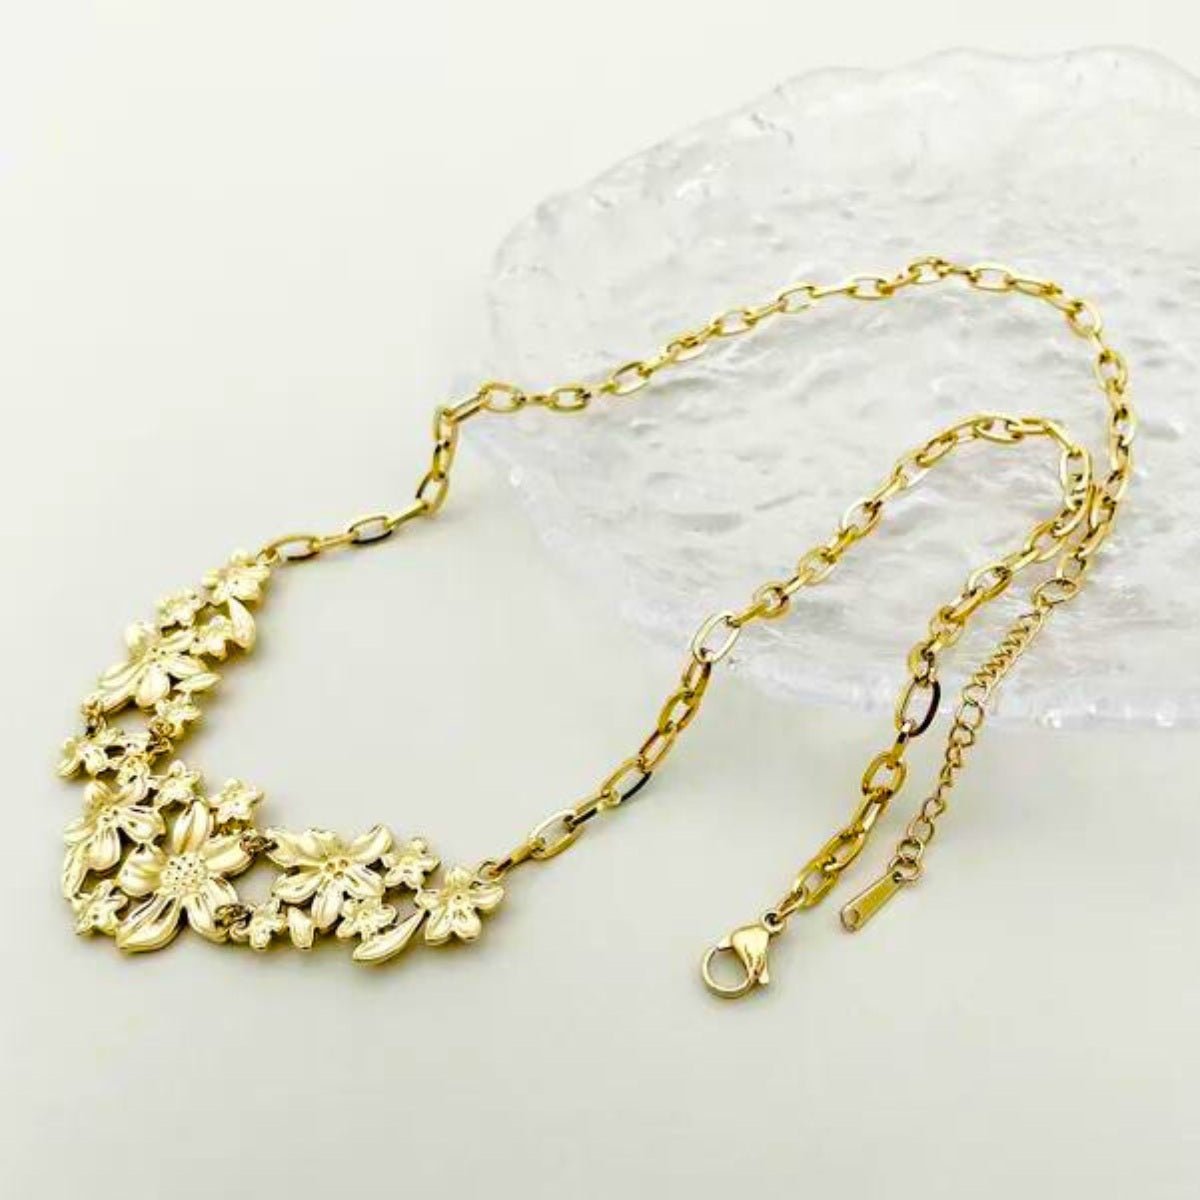 Γυναικείο κολιέ ατσάλινο μακρύ 52 + 6 εκατοστά με λουλούδια επιχρυσωμένο (N1352) - necklace - charmy.gr